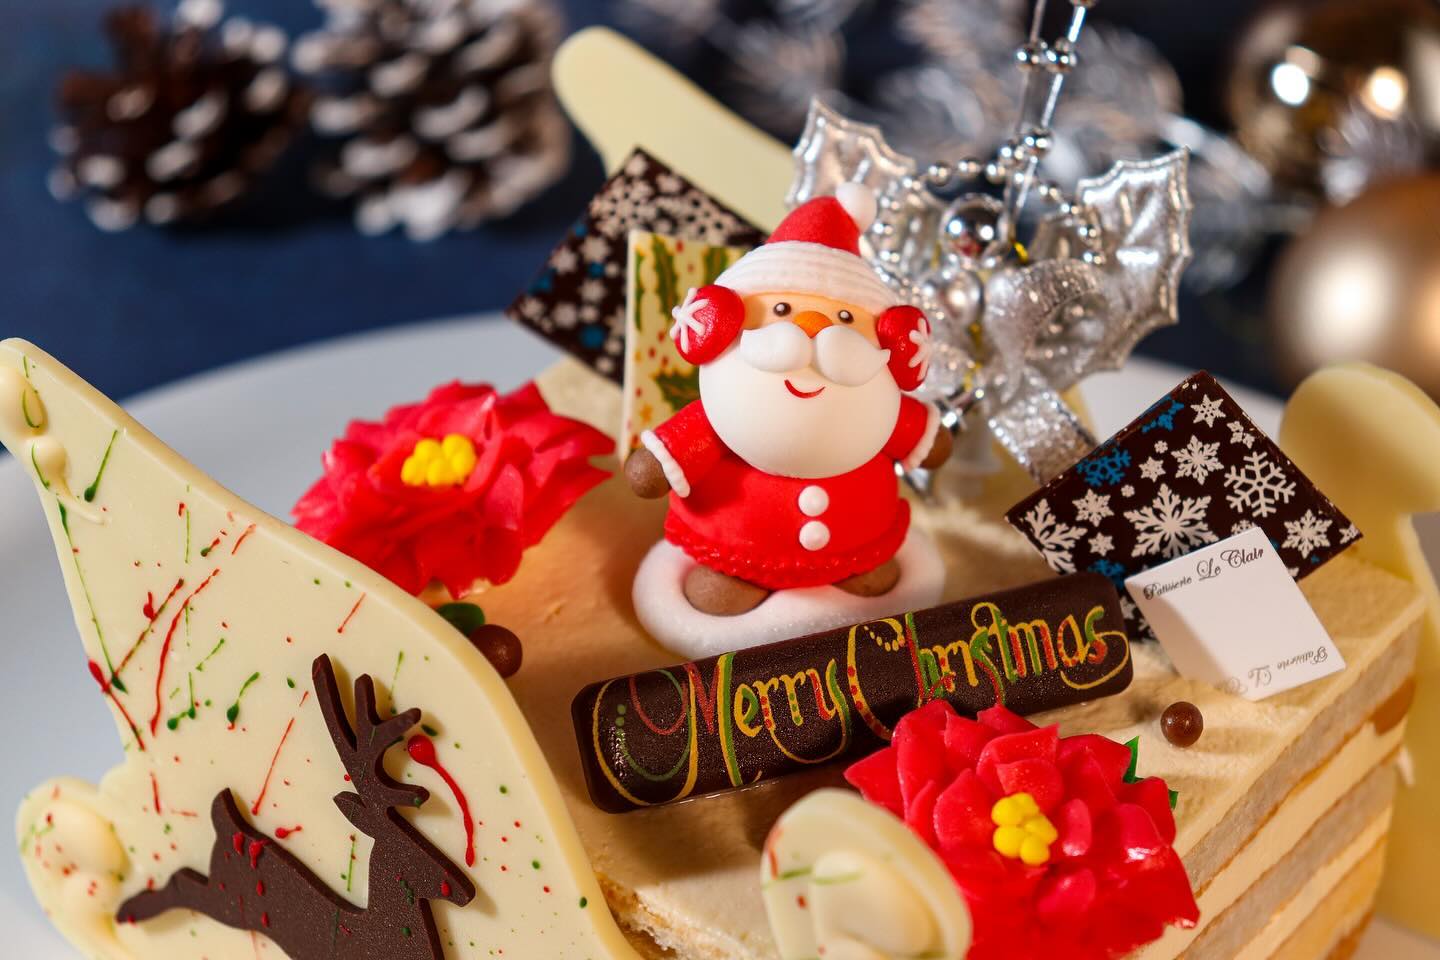 クリスマスケーキ　NO.11

リッチ・マカダミア

4 号サイズ相当 (11.5×10.5cm) 
¥3,500( 税込 ¥3,780) 50台

マカダミアをふんだんに使用したリッチな 
味わいのバタークリームケーキです。 
多重層から生み出される様々な食感と
口溶けをお楽しみください。